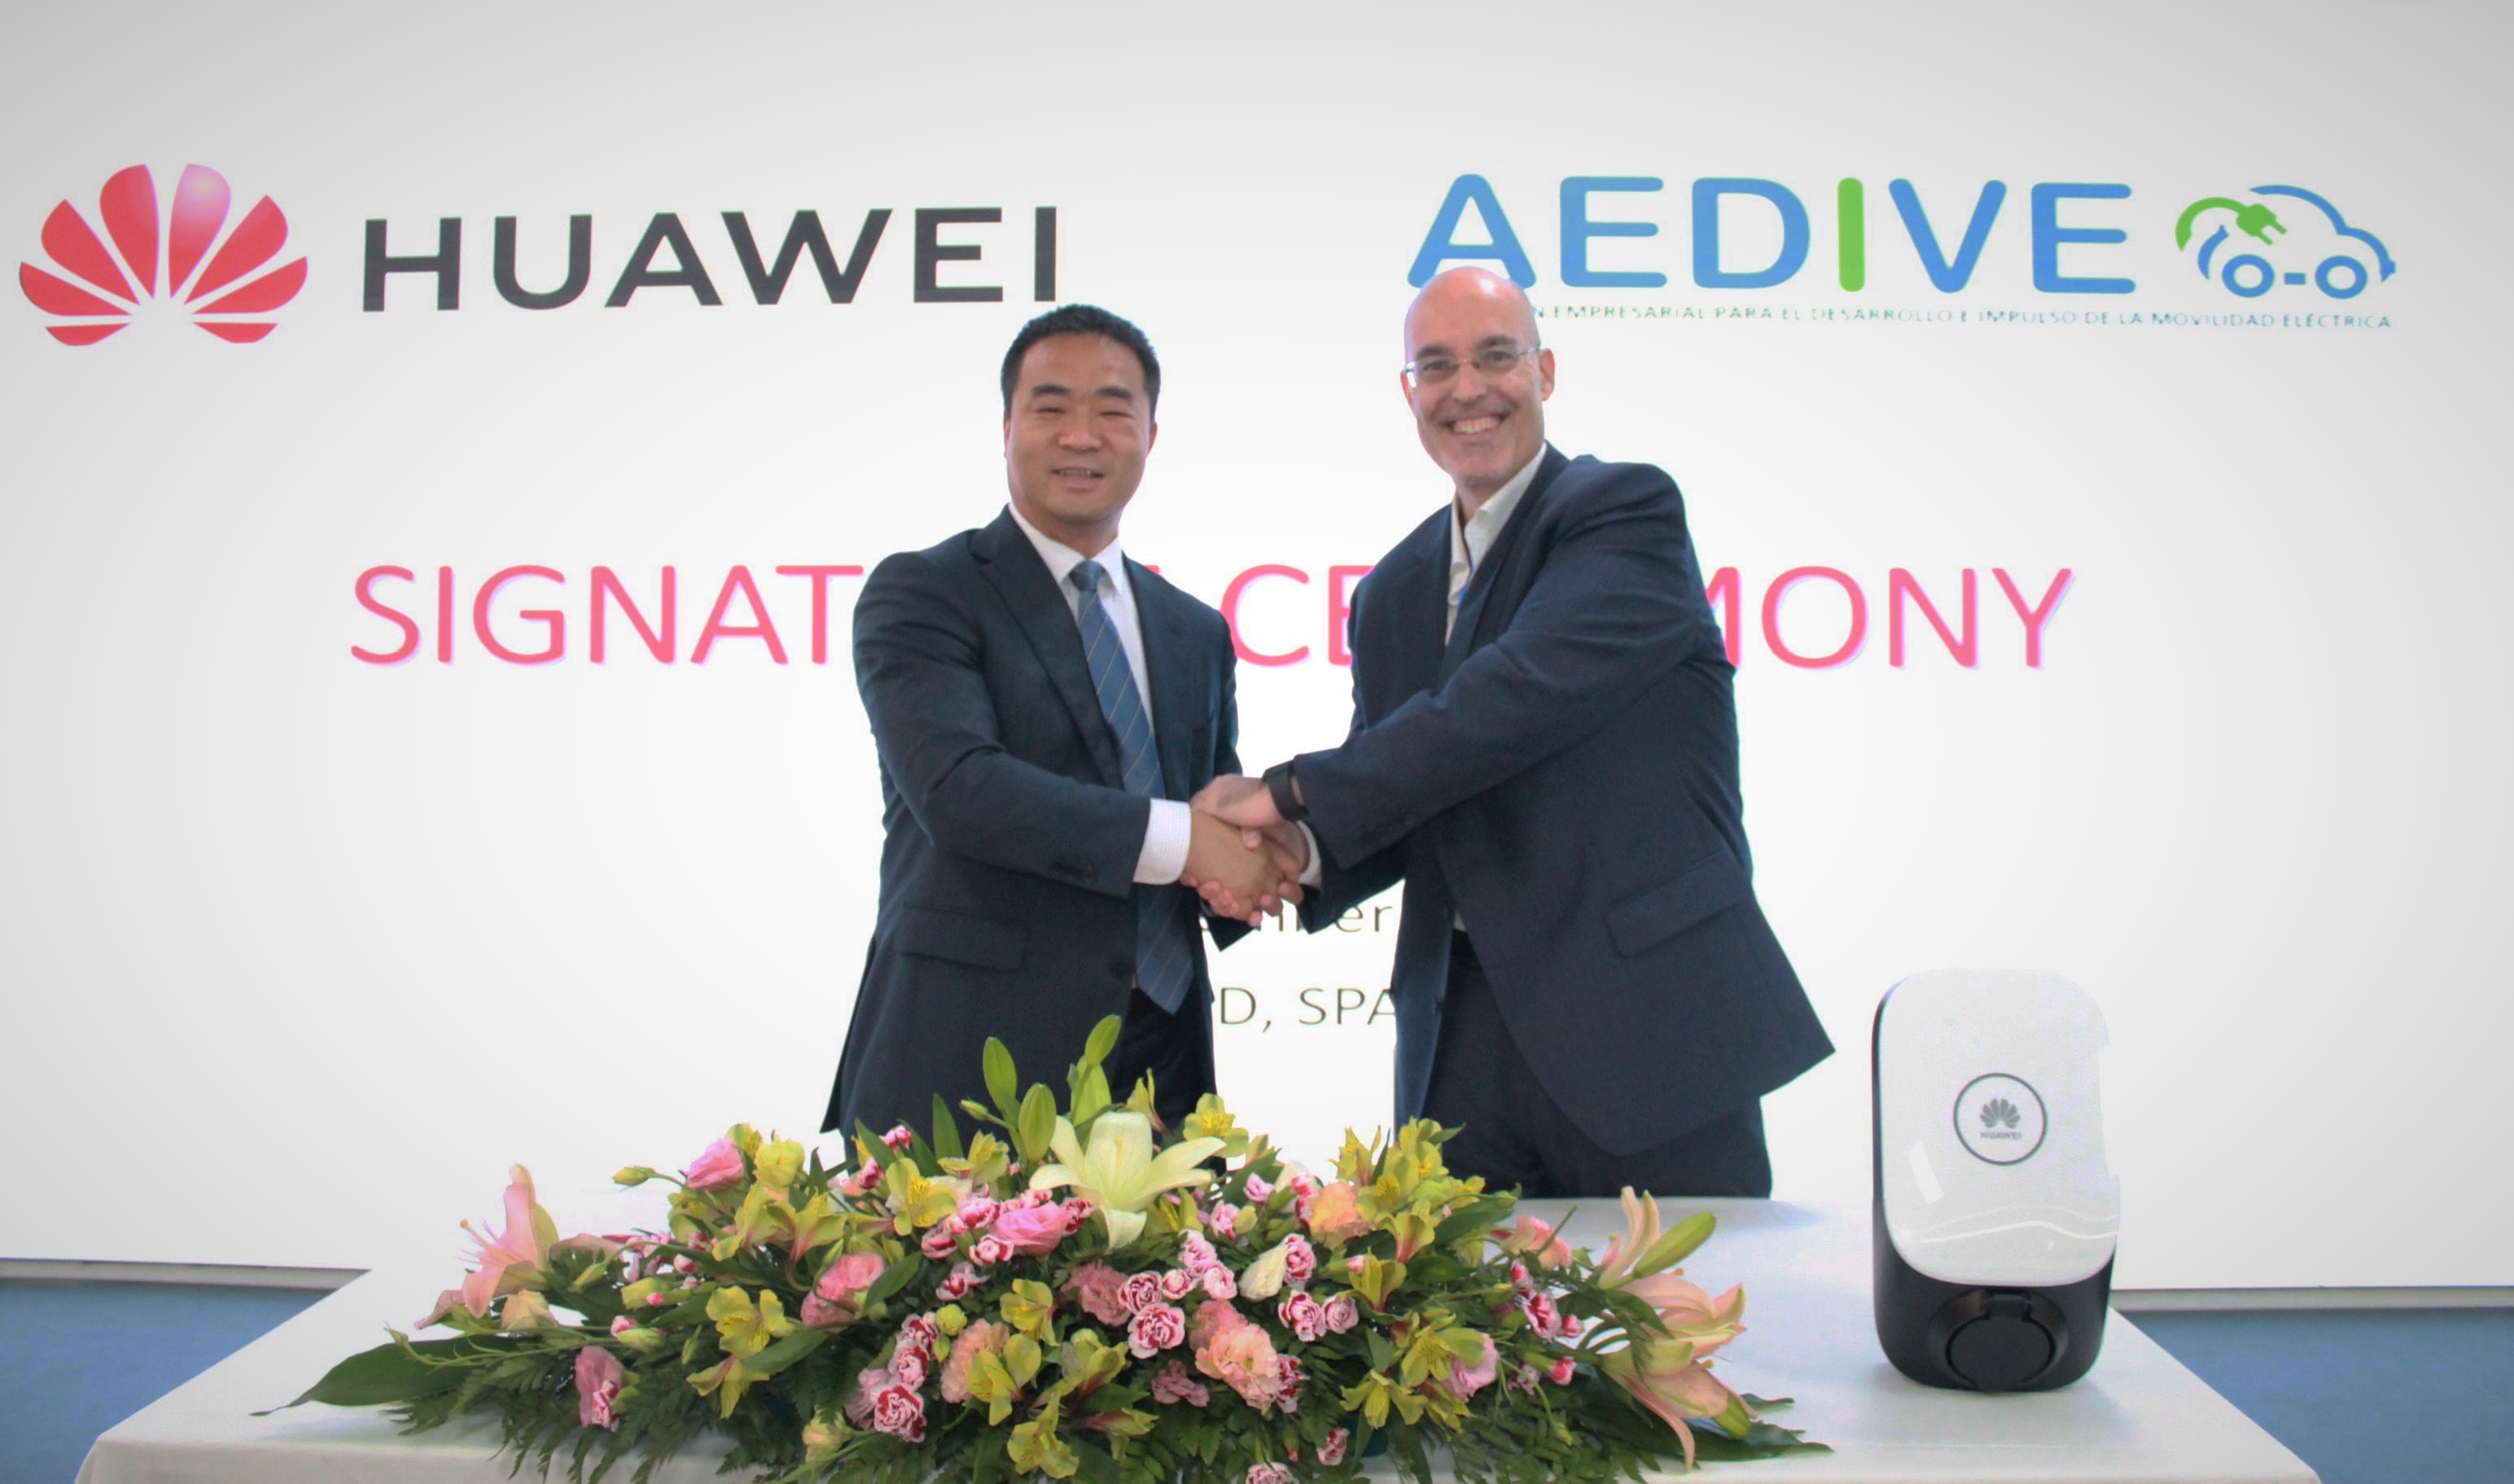 2Eric Li CEO de Huawei Espaa y Arturo Prez de Lucia director general de AEDIVE